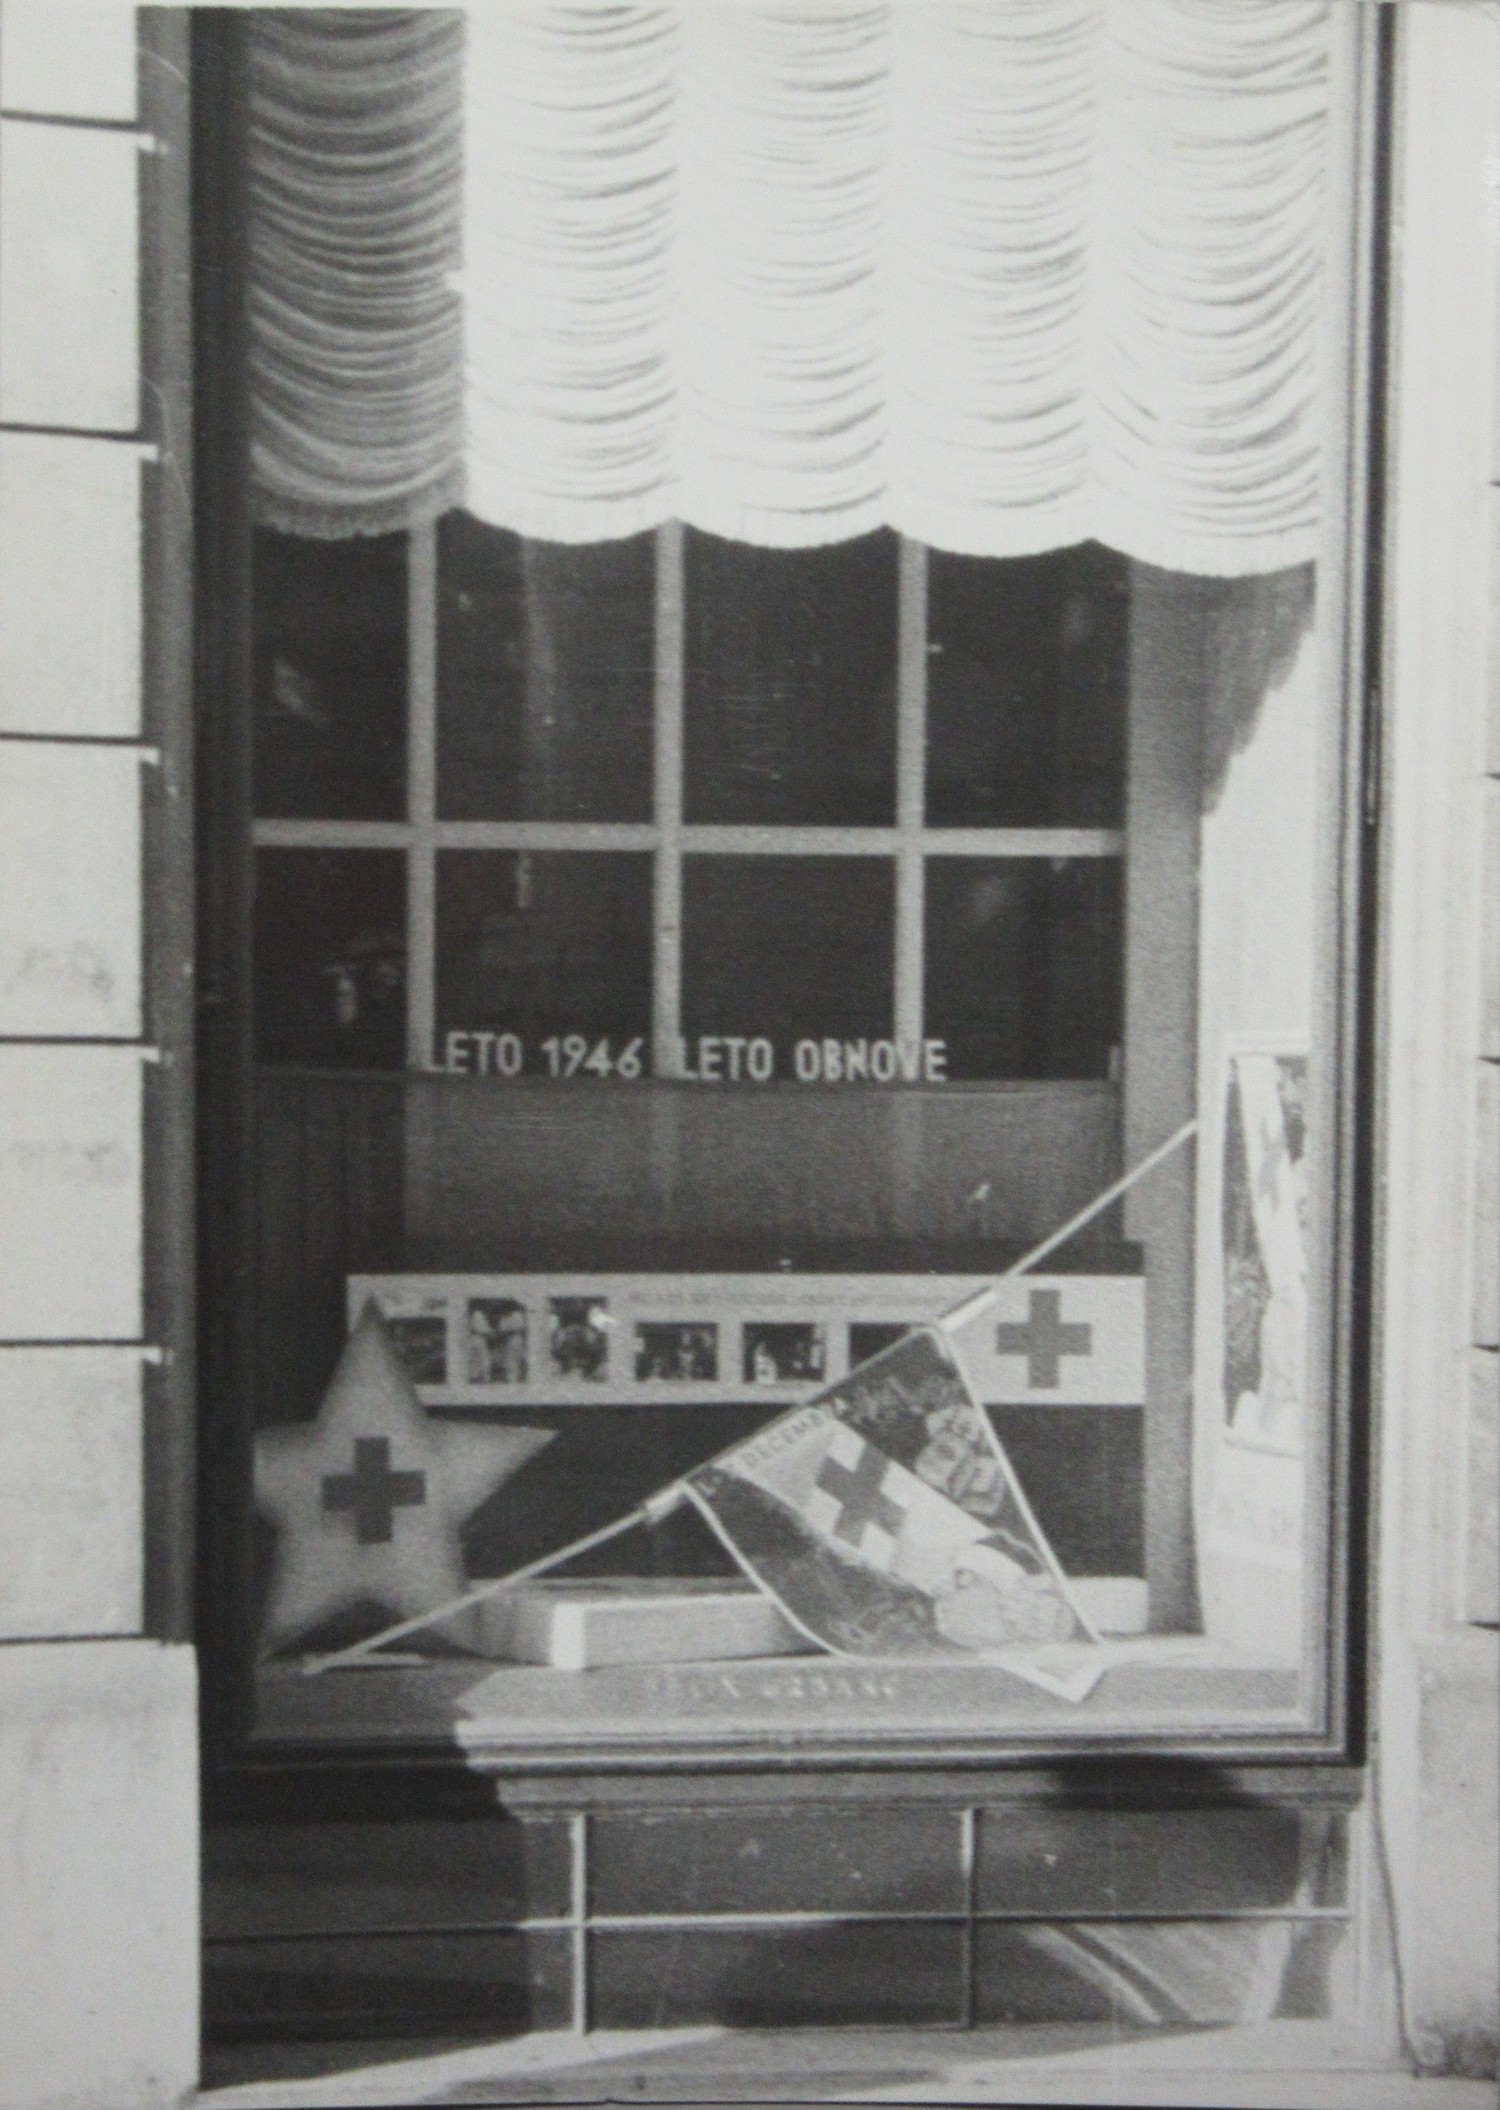 Slika 3: V vseslovenskem »Tednu Rdečega križa« so s prireditvami,
                        zbiranjem denarnih in materialnih sredstev na manifestativen način, kot je
                        okrasitev izložb (na fotografiji izložba trgovine z manufakturo v Ljubljani
                        z napisom LETO 1946 LETO OBNOVE), lajšali pogoje za hitrejšo obnovo. Glavni
                        odbor RKS je izdal navodilo, da se »mesto in dežela okrasita v znamenju
                        Rdečega križa in tako privabljata nove člane«. Danes Teden Rdečega križa
                        Slovenije poteka vsako leto od 8. do 15. maja. 